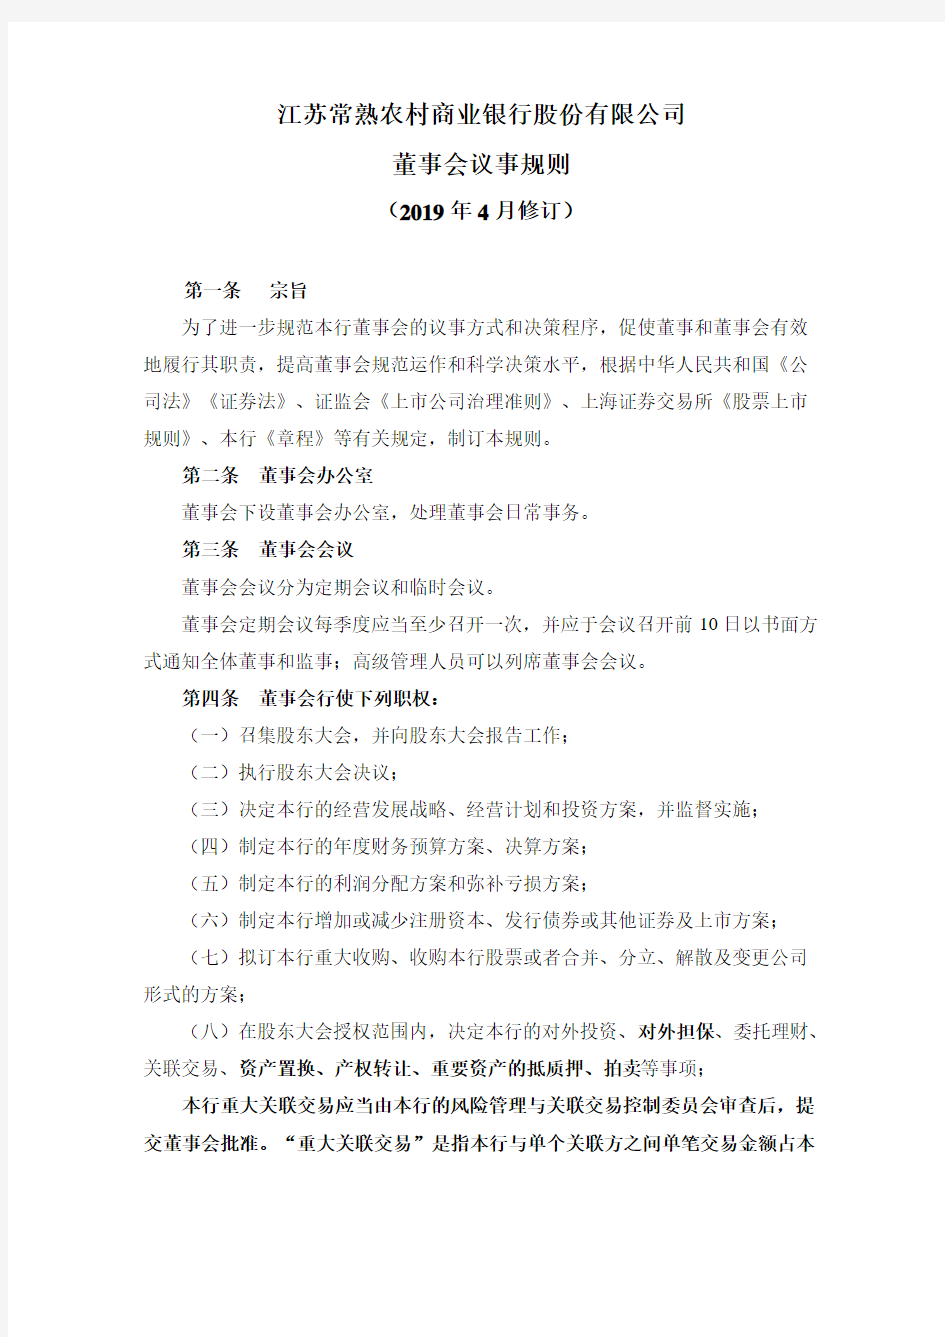 江苏常熟农村商业银行股份有限公司董事会议事规则.pdf